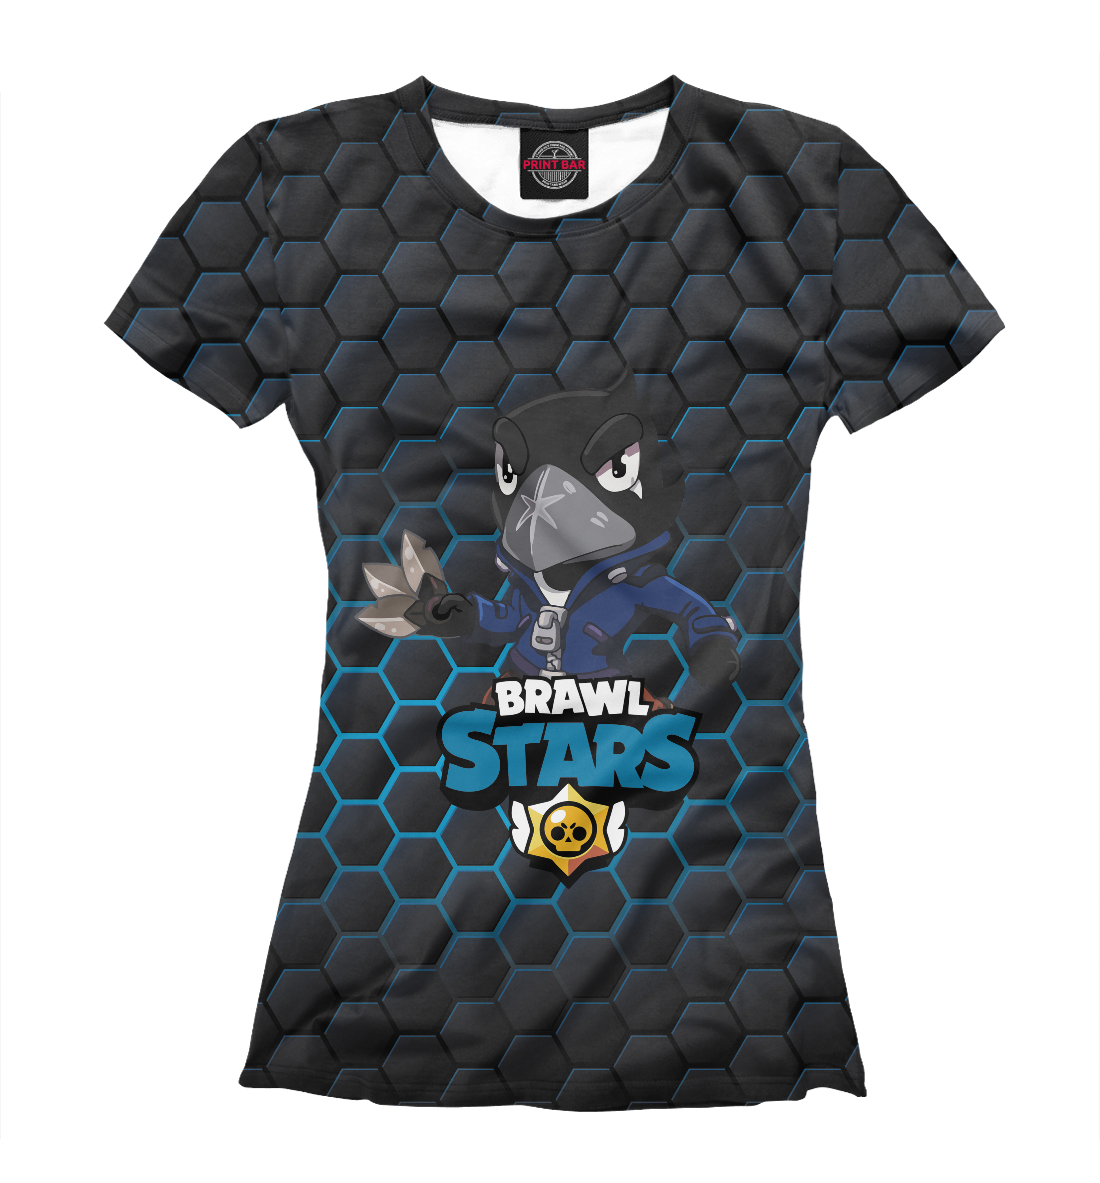 Футболка Brawl Stars Crow для девочек, артикул: RPG-785532-fut-1mp